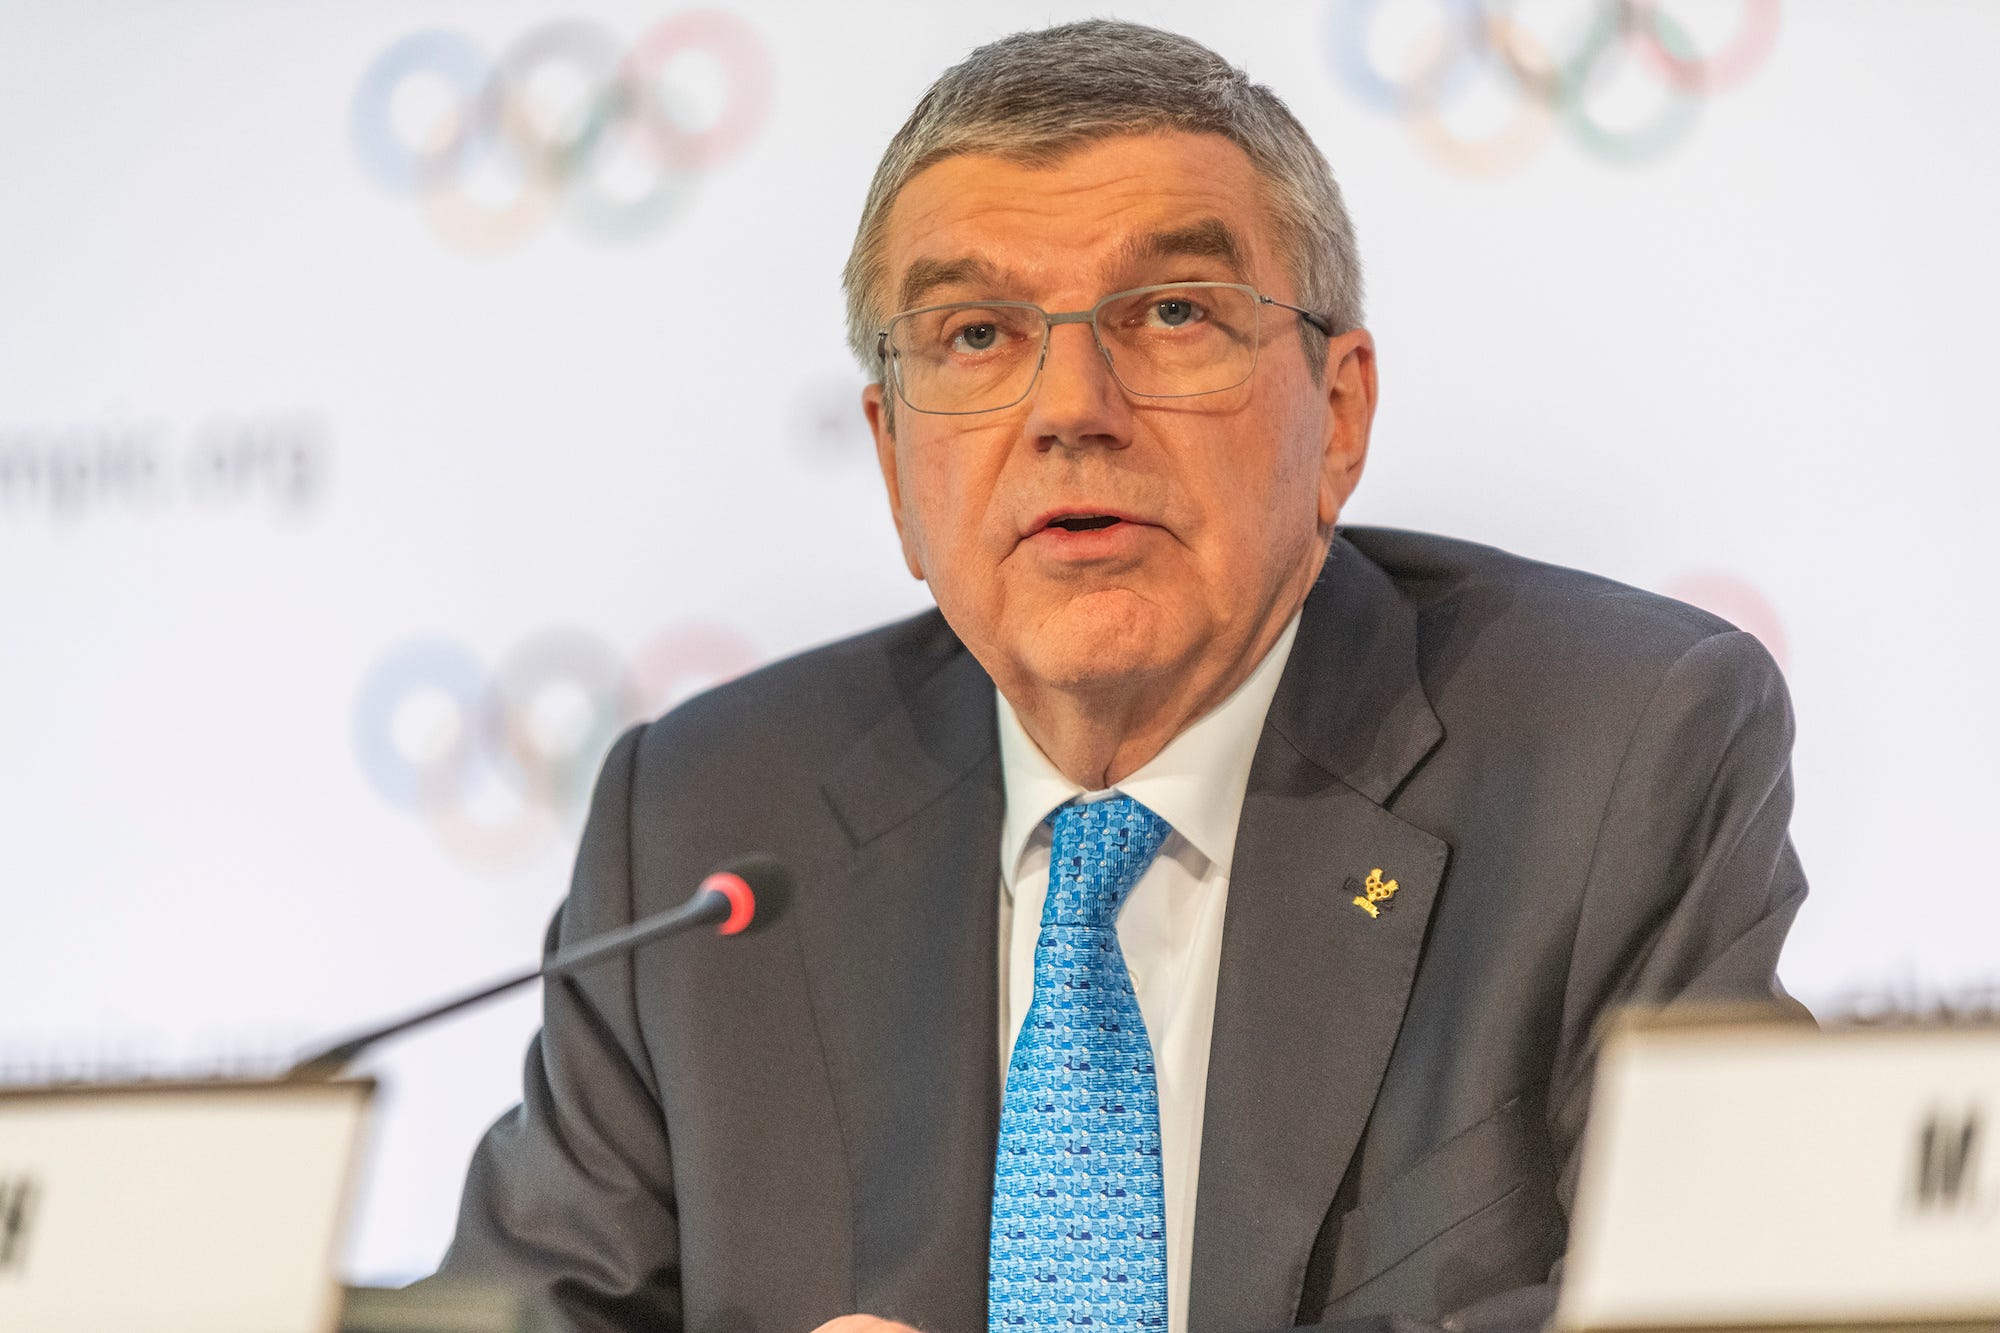 Thomas Bach, IOC-Präsident, der die Pressekonferenz zum Coronavirus in Bezug auf die Arbeitsgruppe leitet, die für die Olympischen Spiele 2020 in Tokio eingerichtet wurde, um sie im Olympiahaus sicherer zu machen